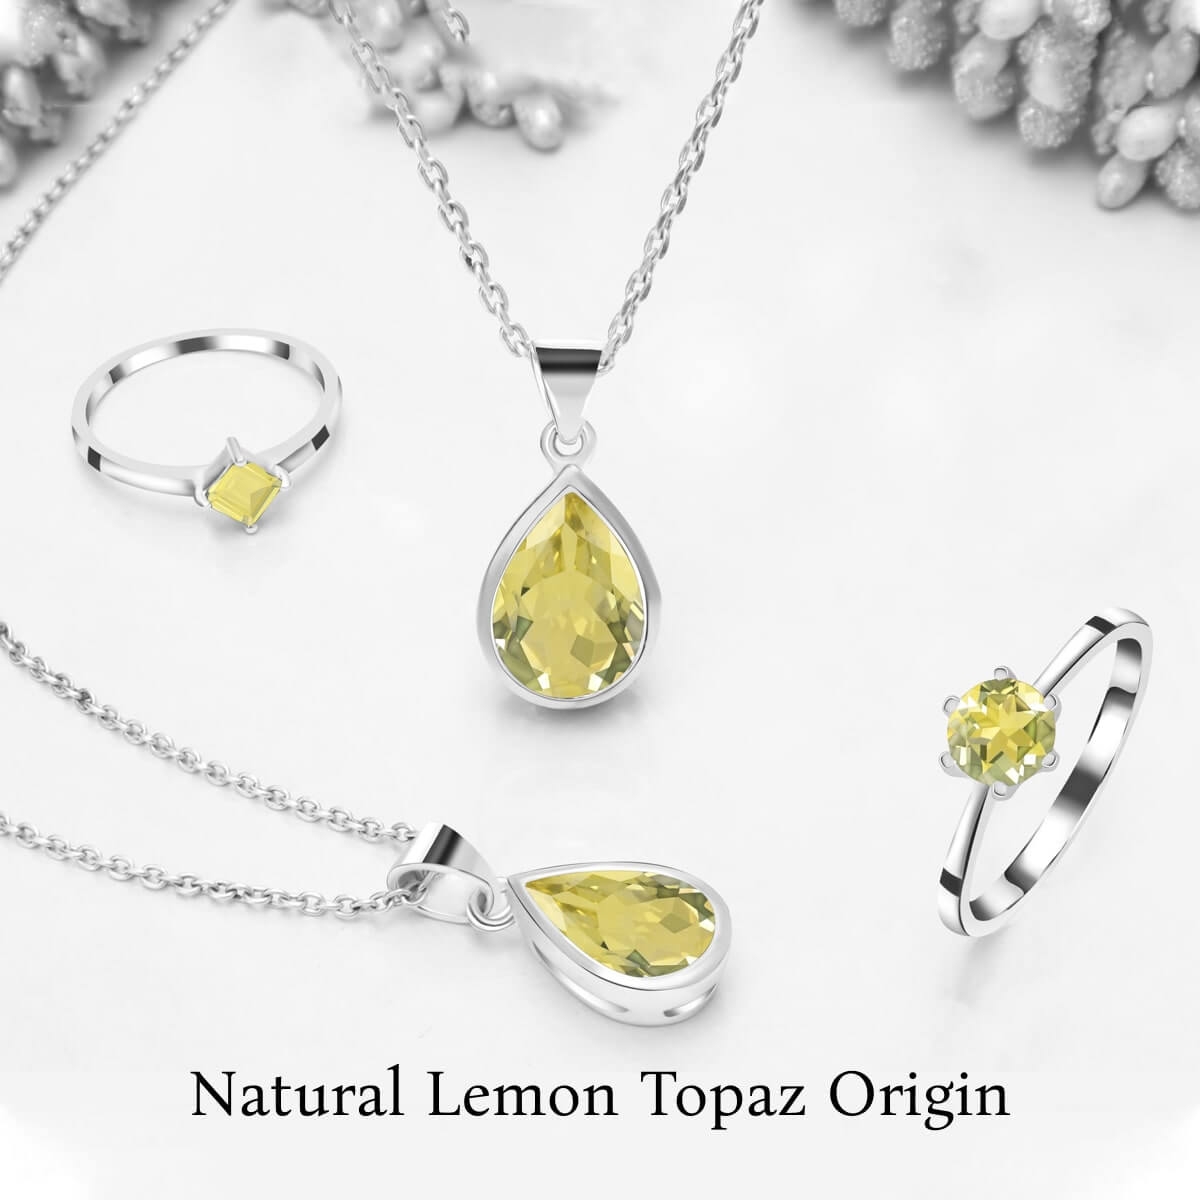 Origin of Lemon Topaz